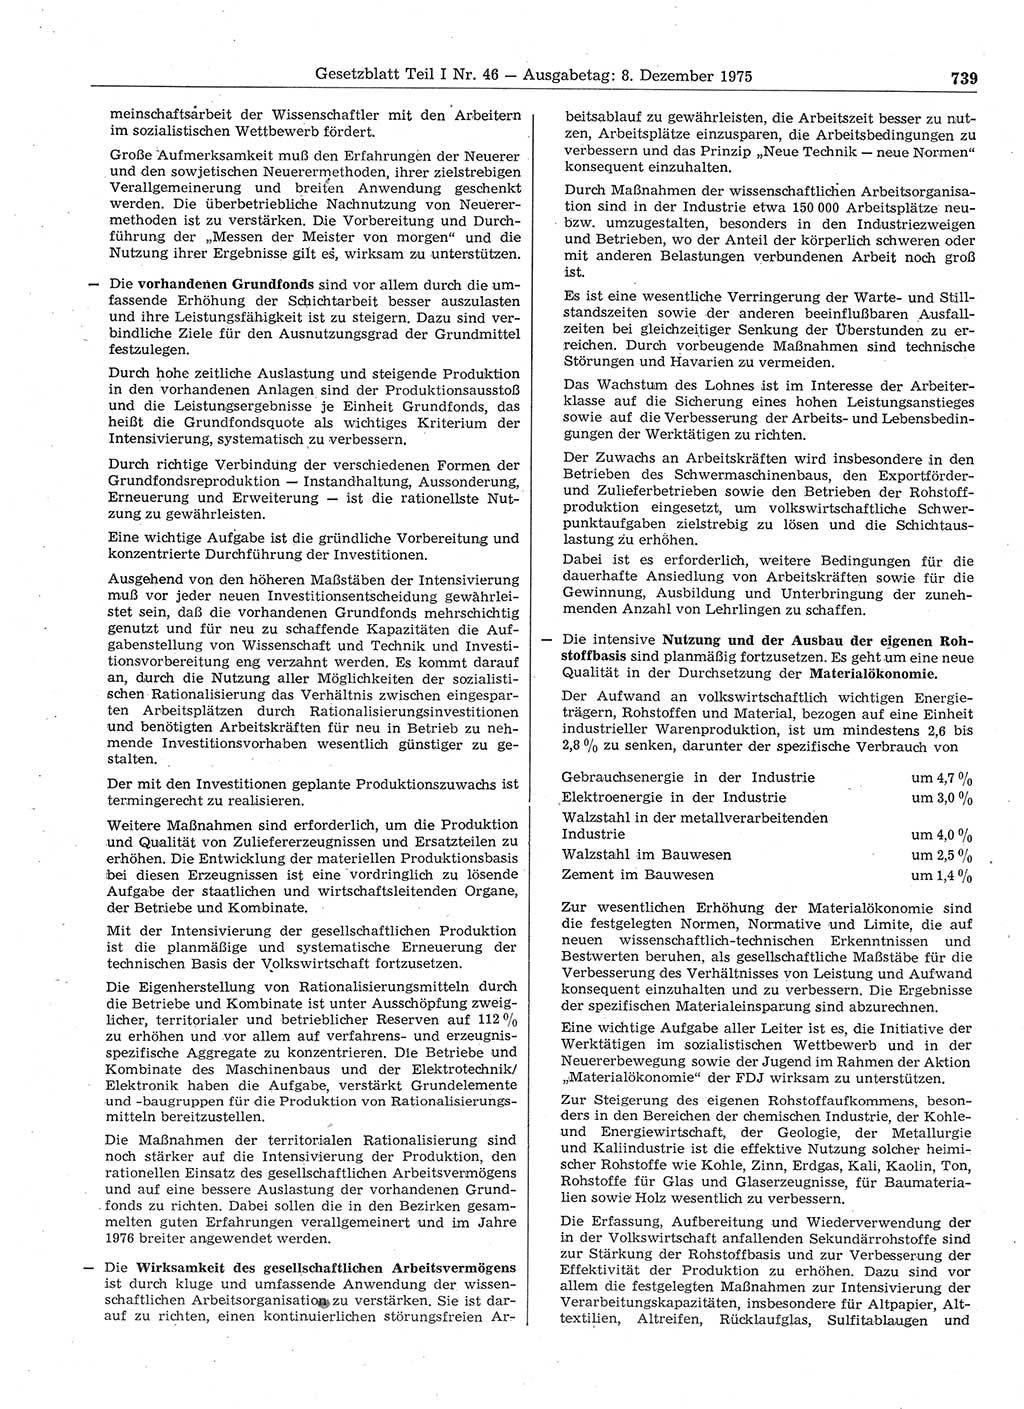 Gesetzblatt (GBl.) der Deutschen Demokratischen Republik (DDR) Teil Ⅰ 1975, Seite 739 (GBl. DDR Ⅰ 1975, S. 739)